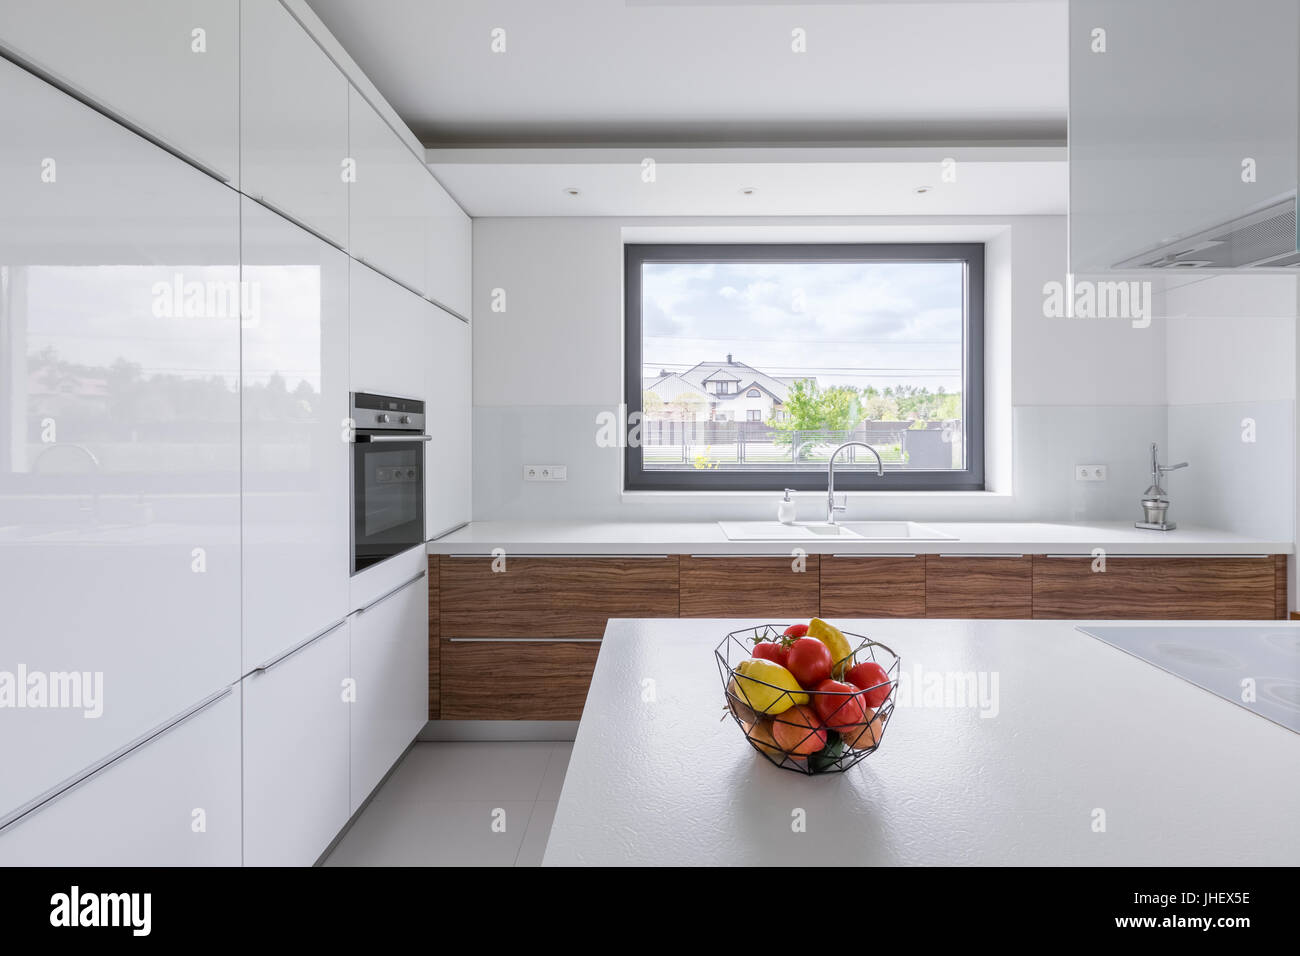 Modernes Design, weiße Küche mit Insel und große Fenster Stockfoto